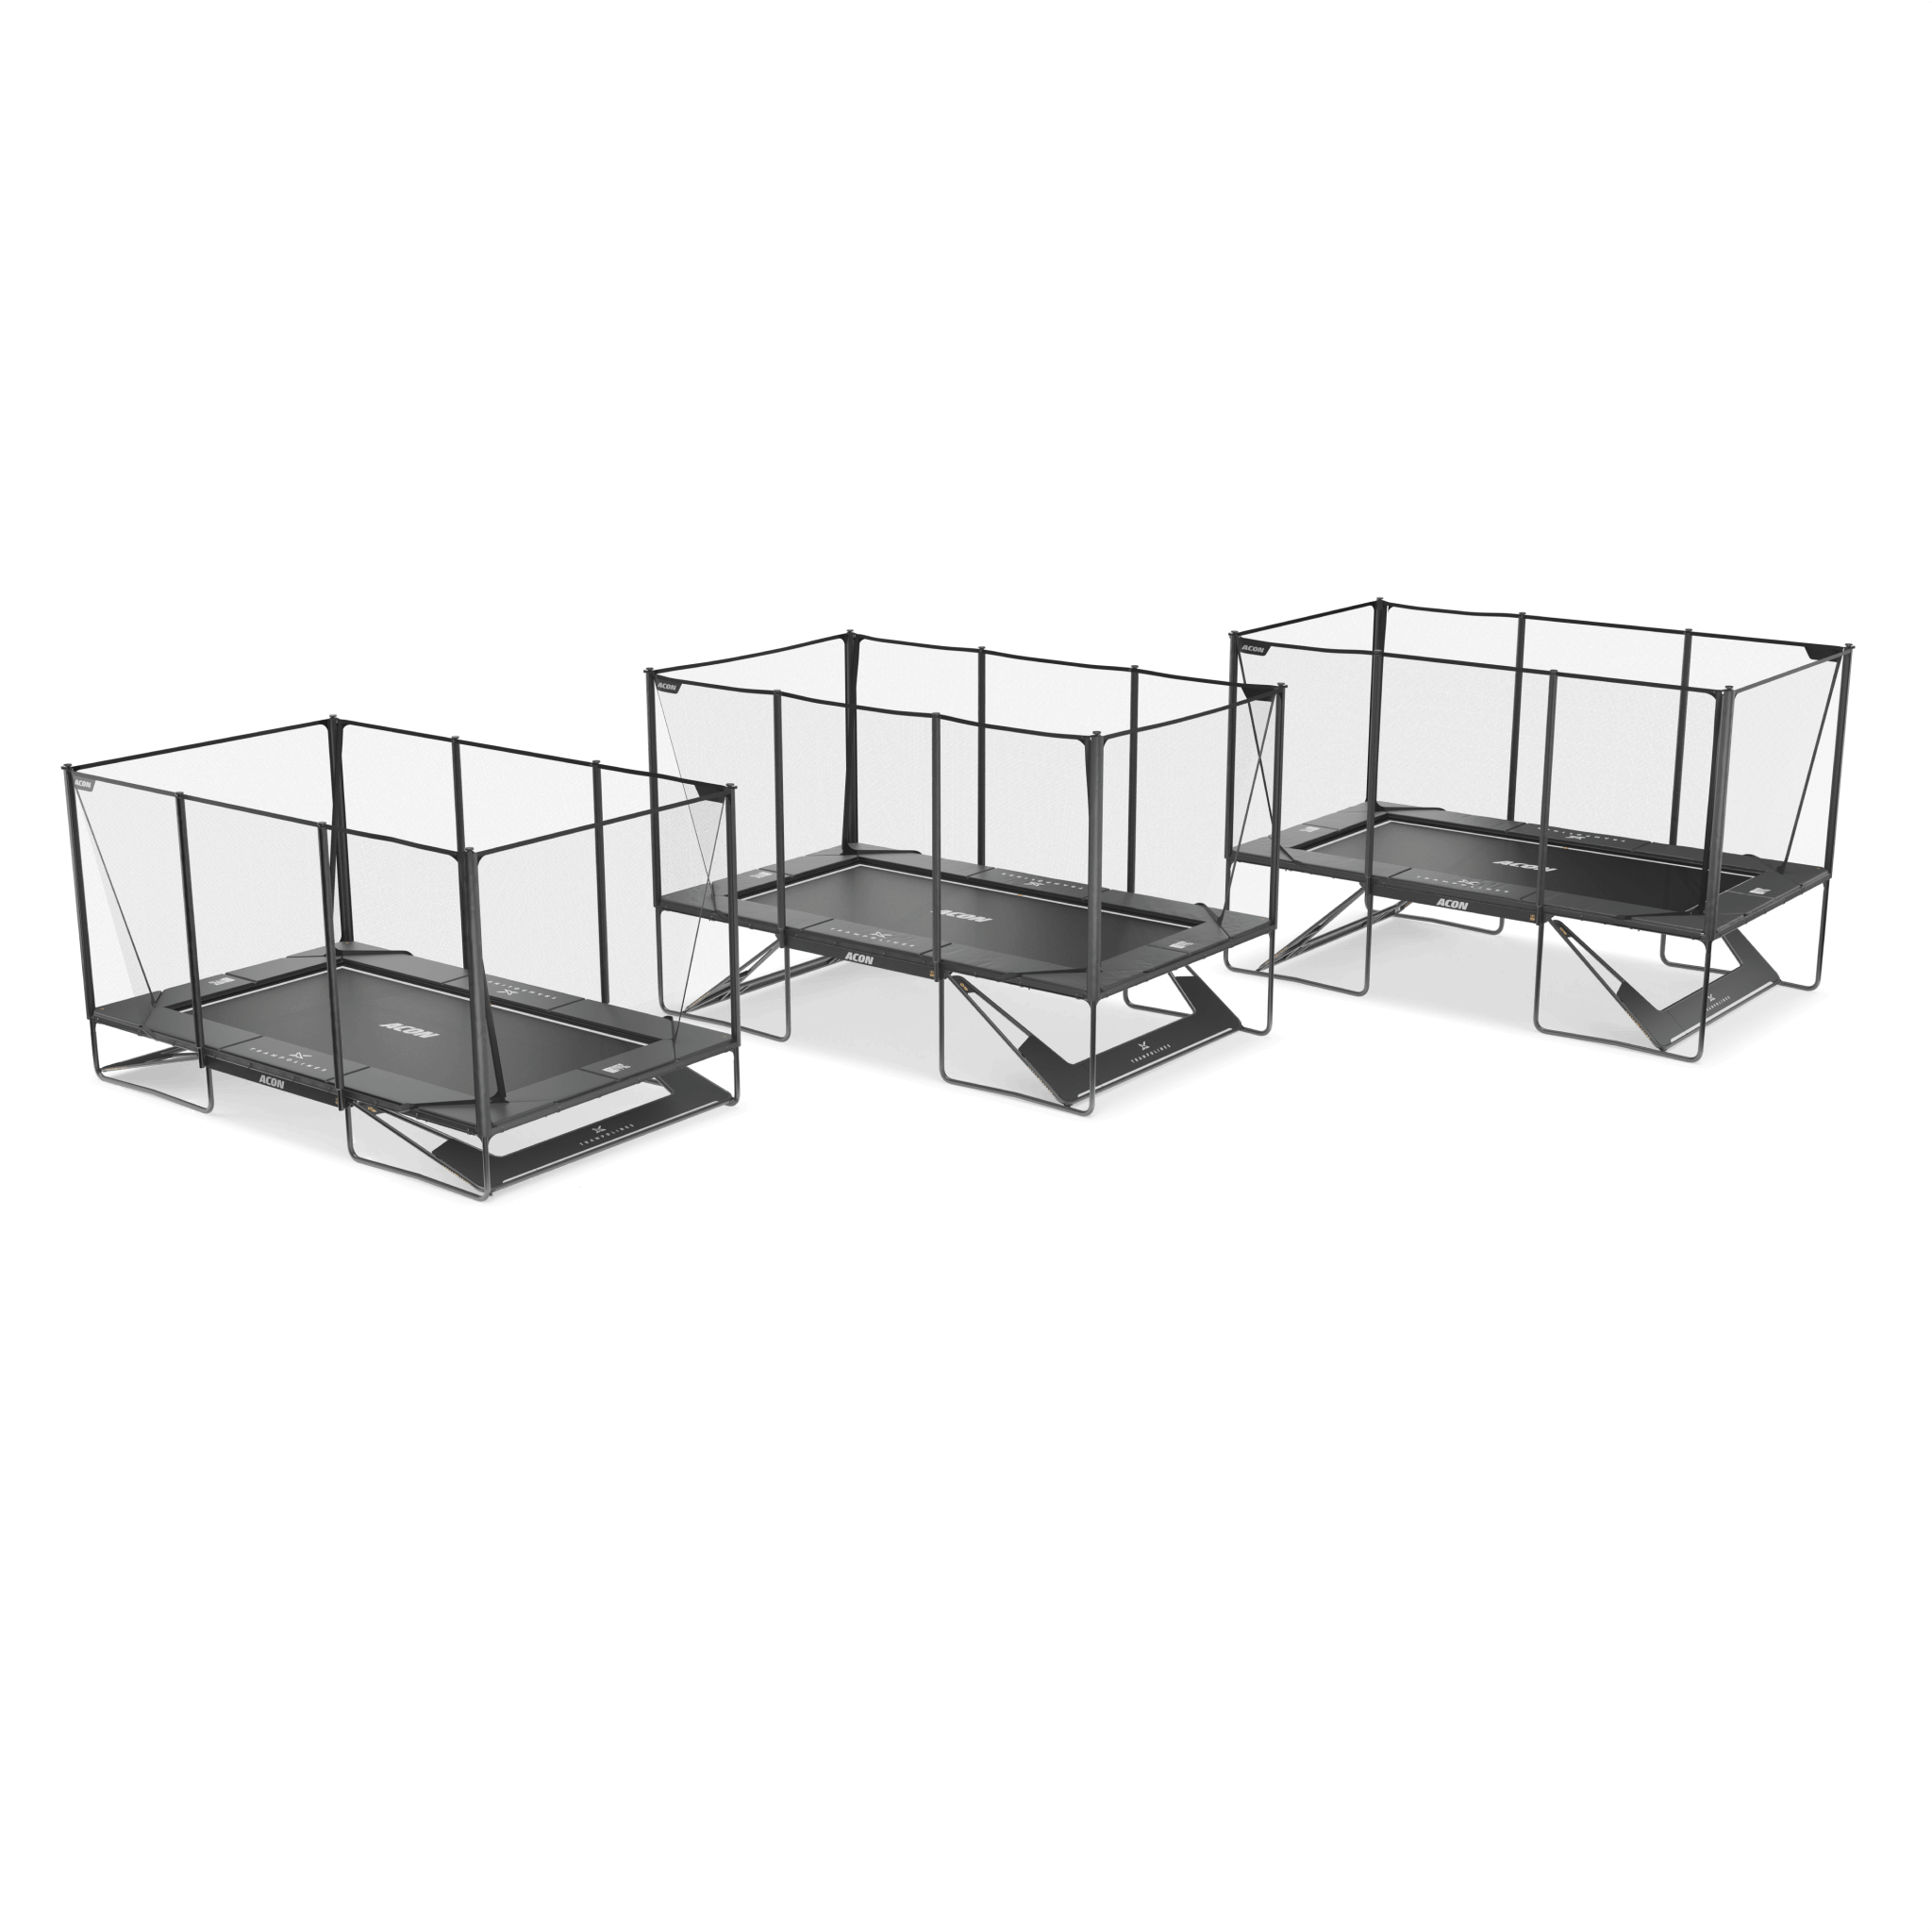 Trois trampolines Acon X installés à différentes hauteurs avec le Kit de hauteur personnalisée, vus d'en haut.